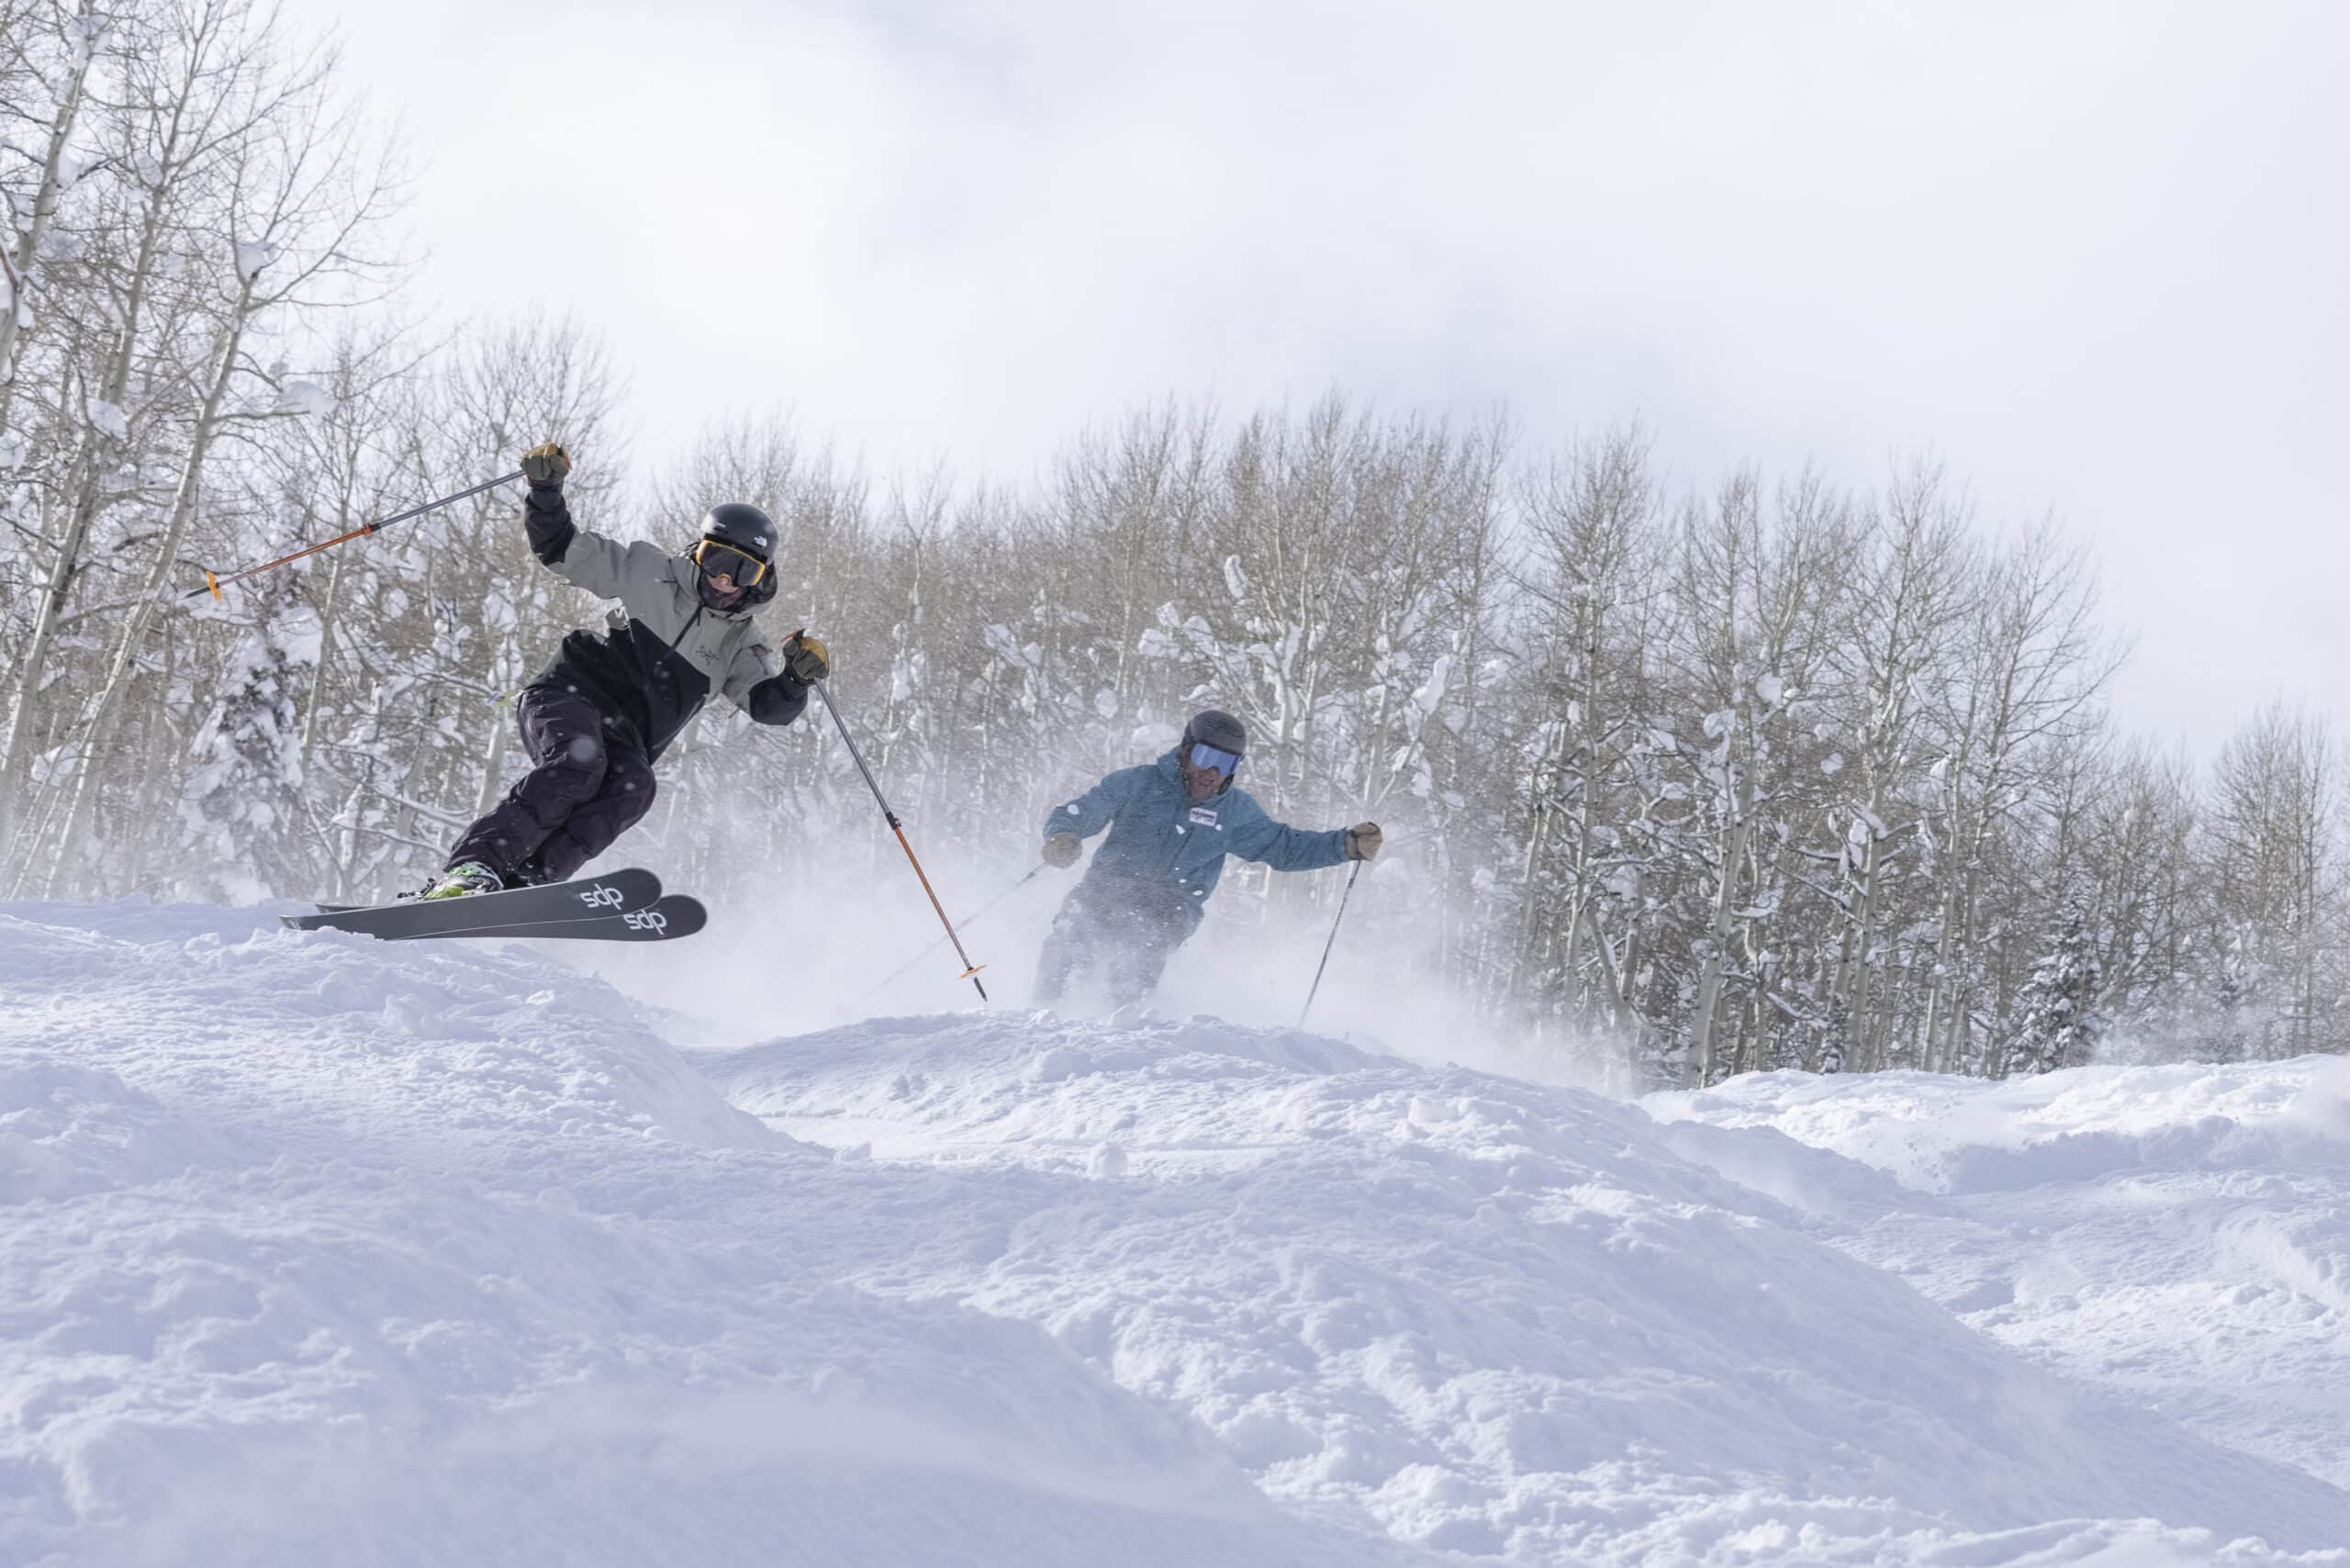 Two skiers enjoy a moguls run